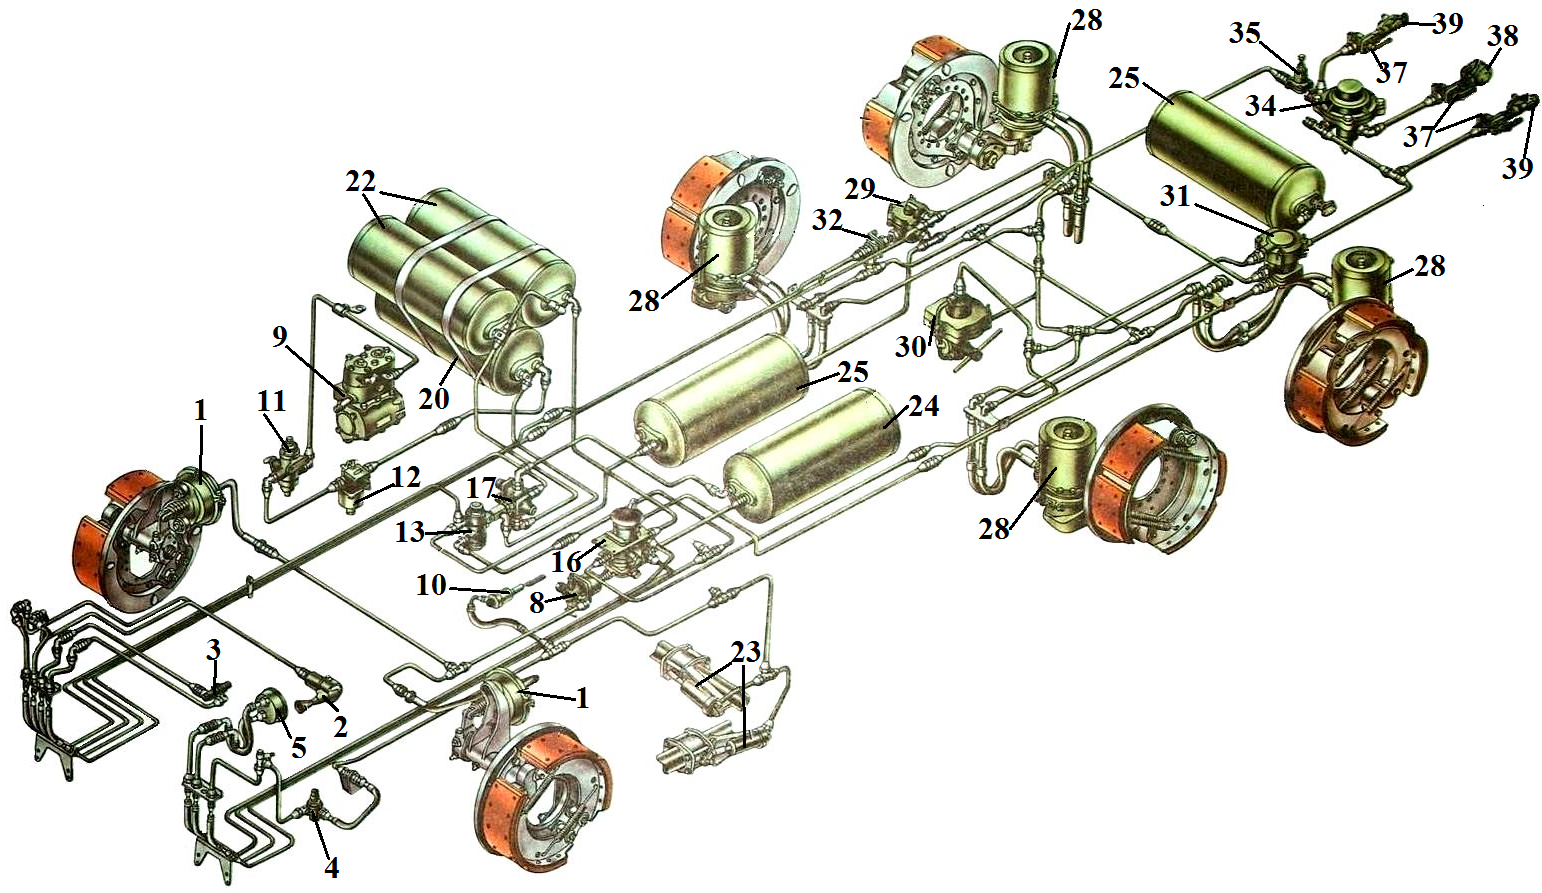 Тормозная система. часть 3 / камаз-4308. руководство по устройству, техническому обслуживанию и ремонту / техсправочник / кама-автодеталь